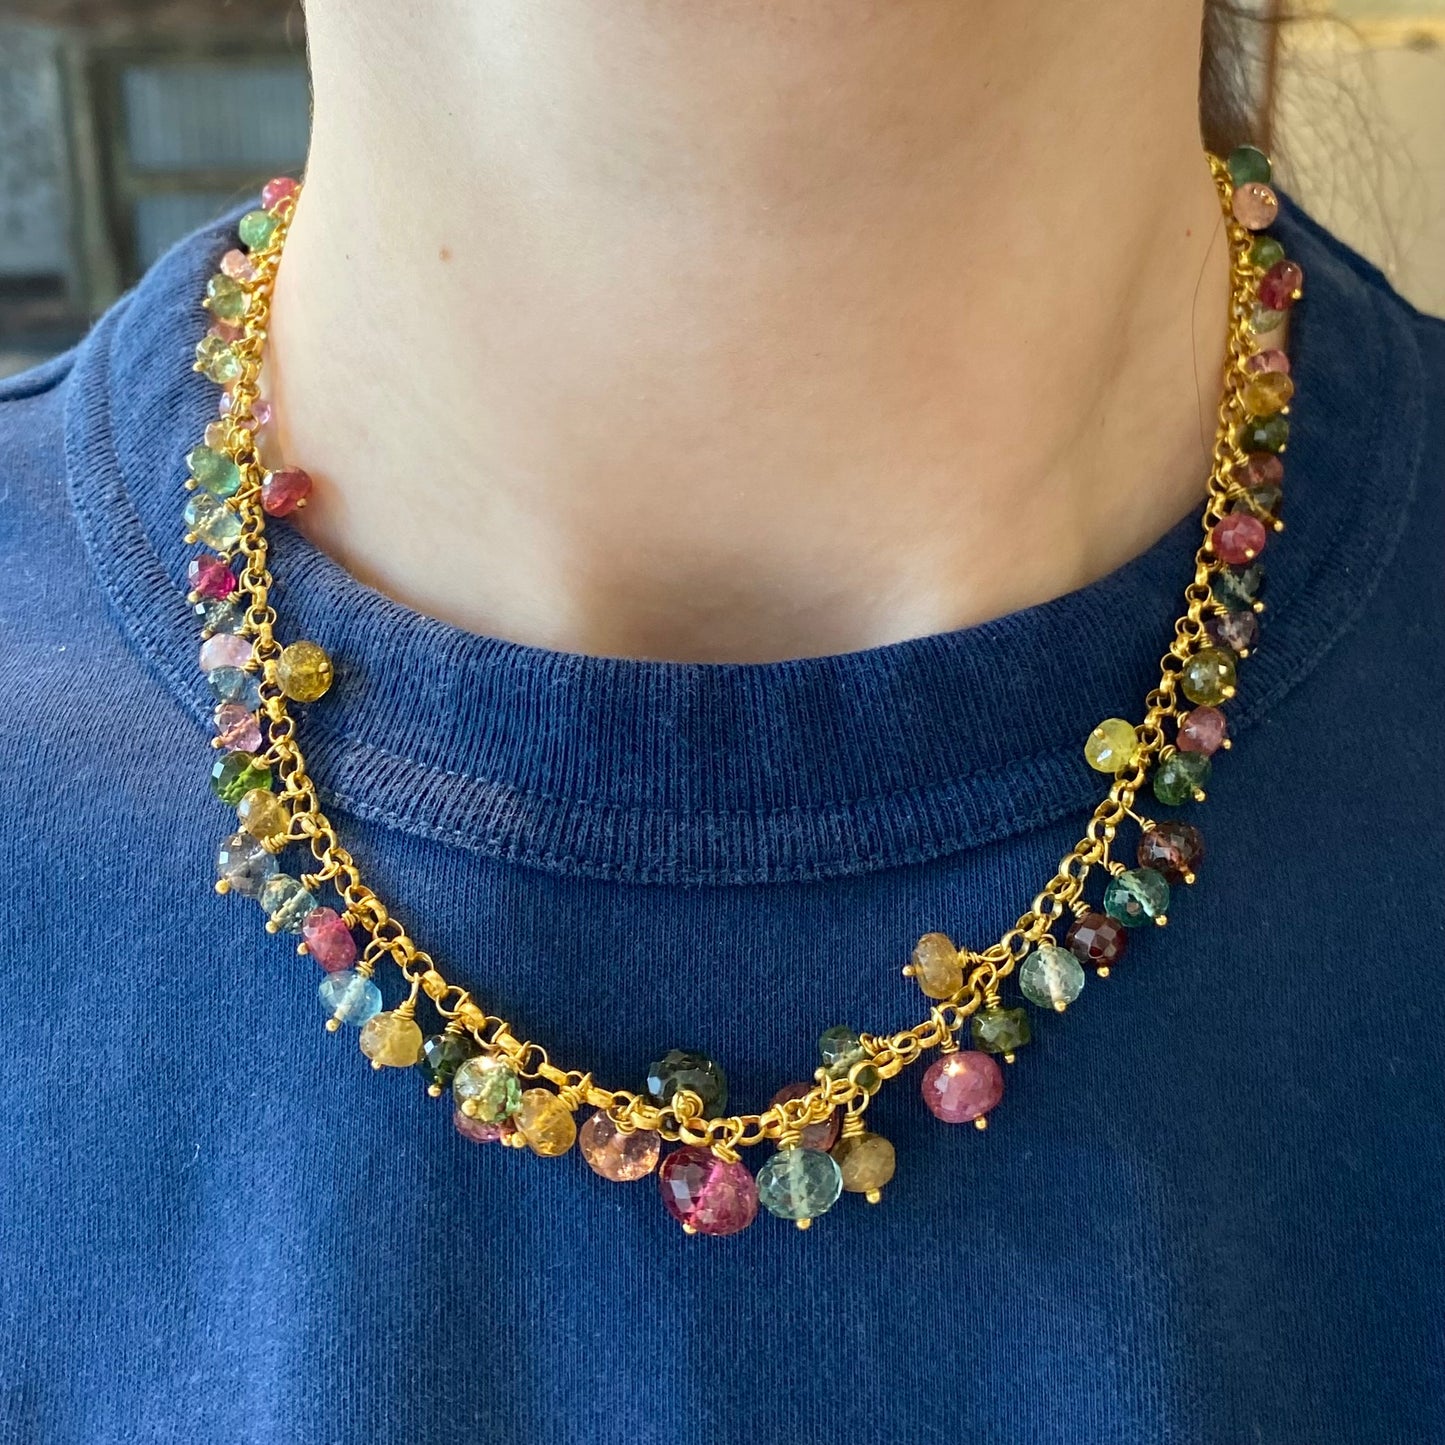 Multi-Color Tourmaline Necklace